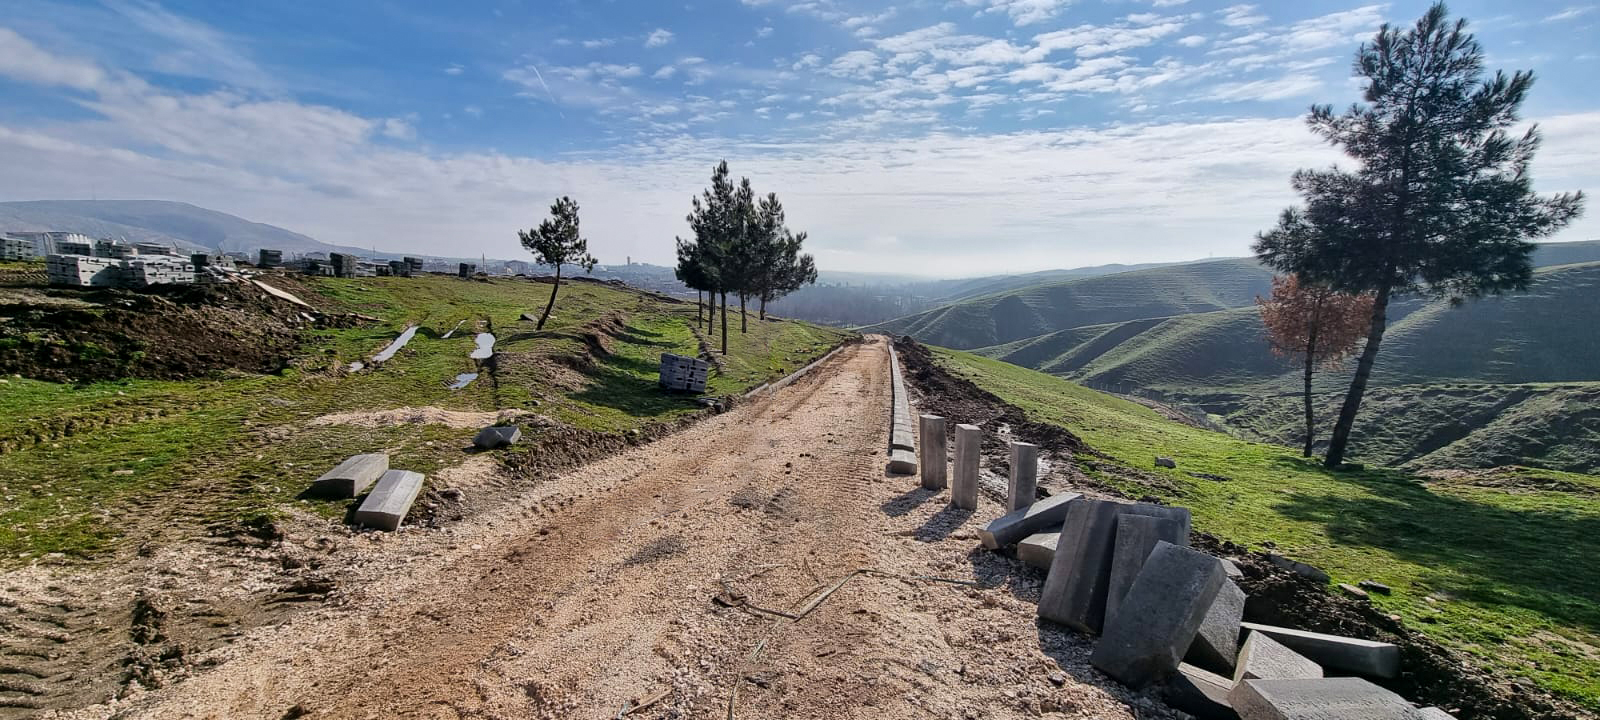 Diyarbakır’da yeni mezarlık alanı yapılıyor